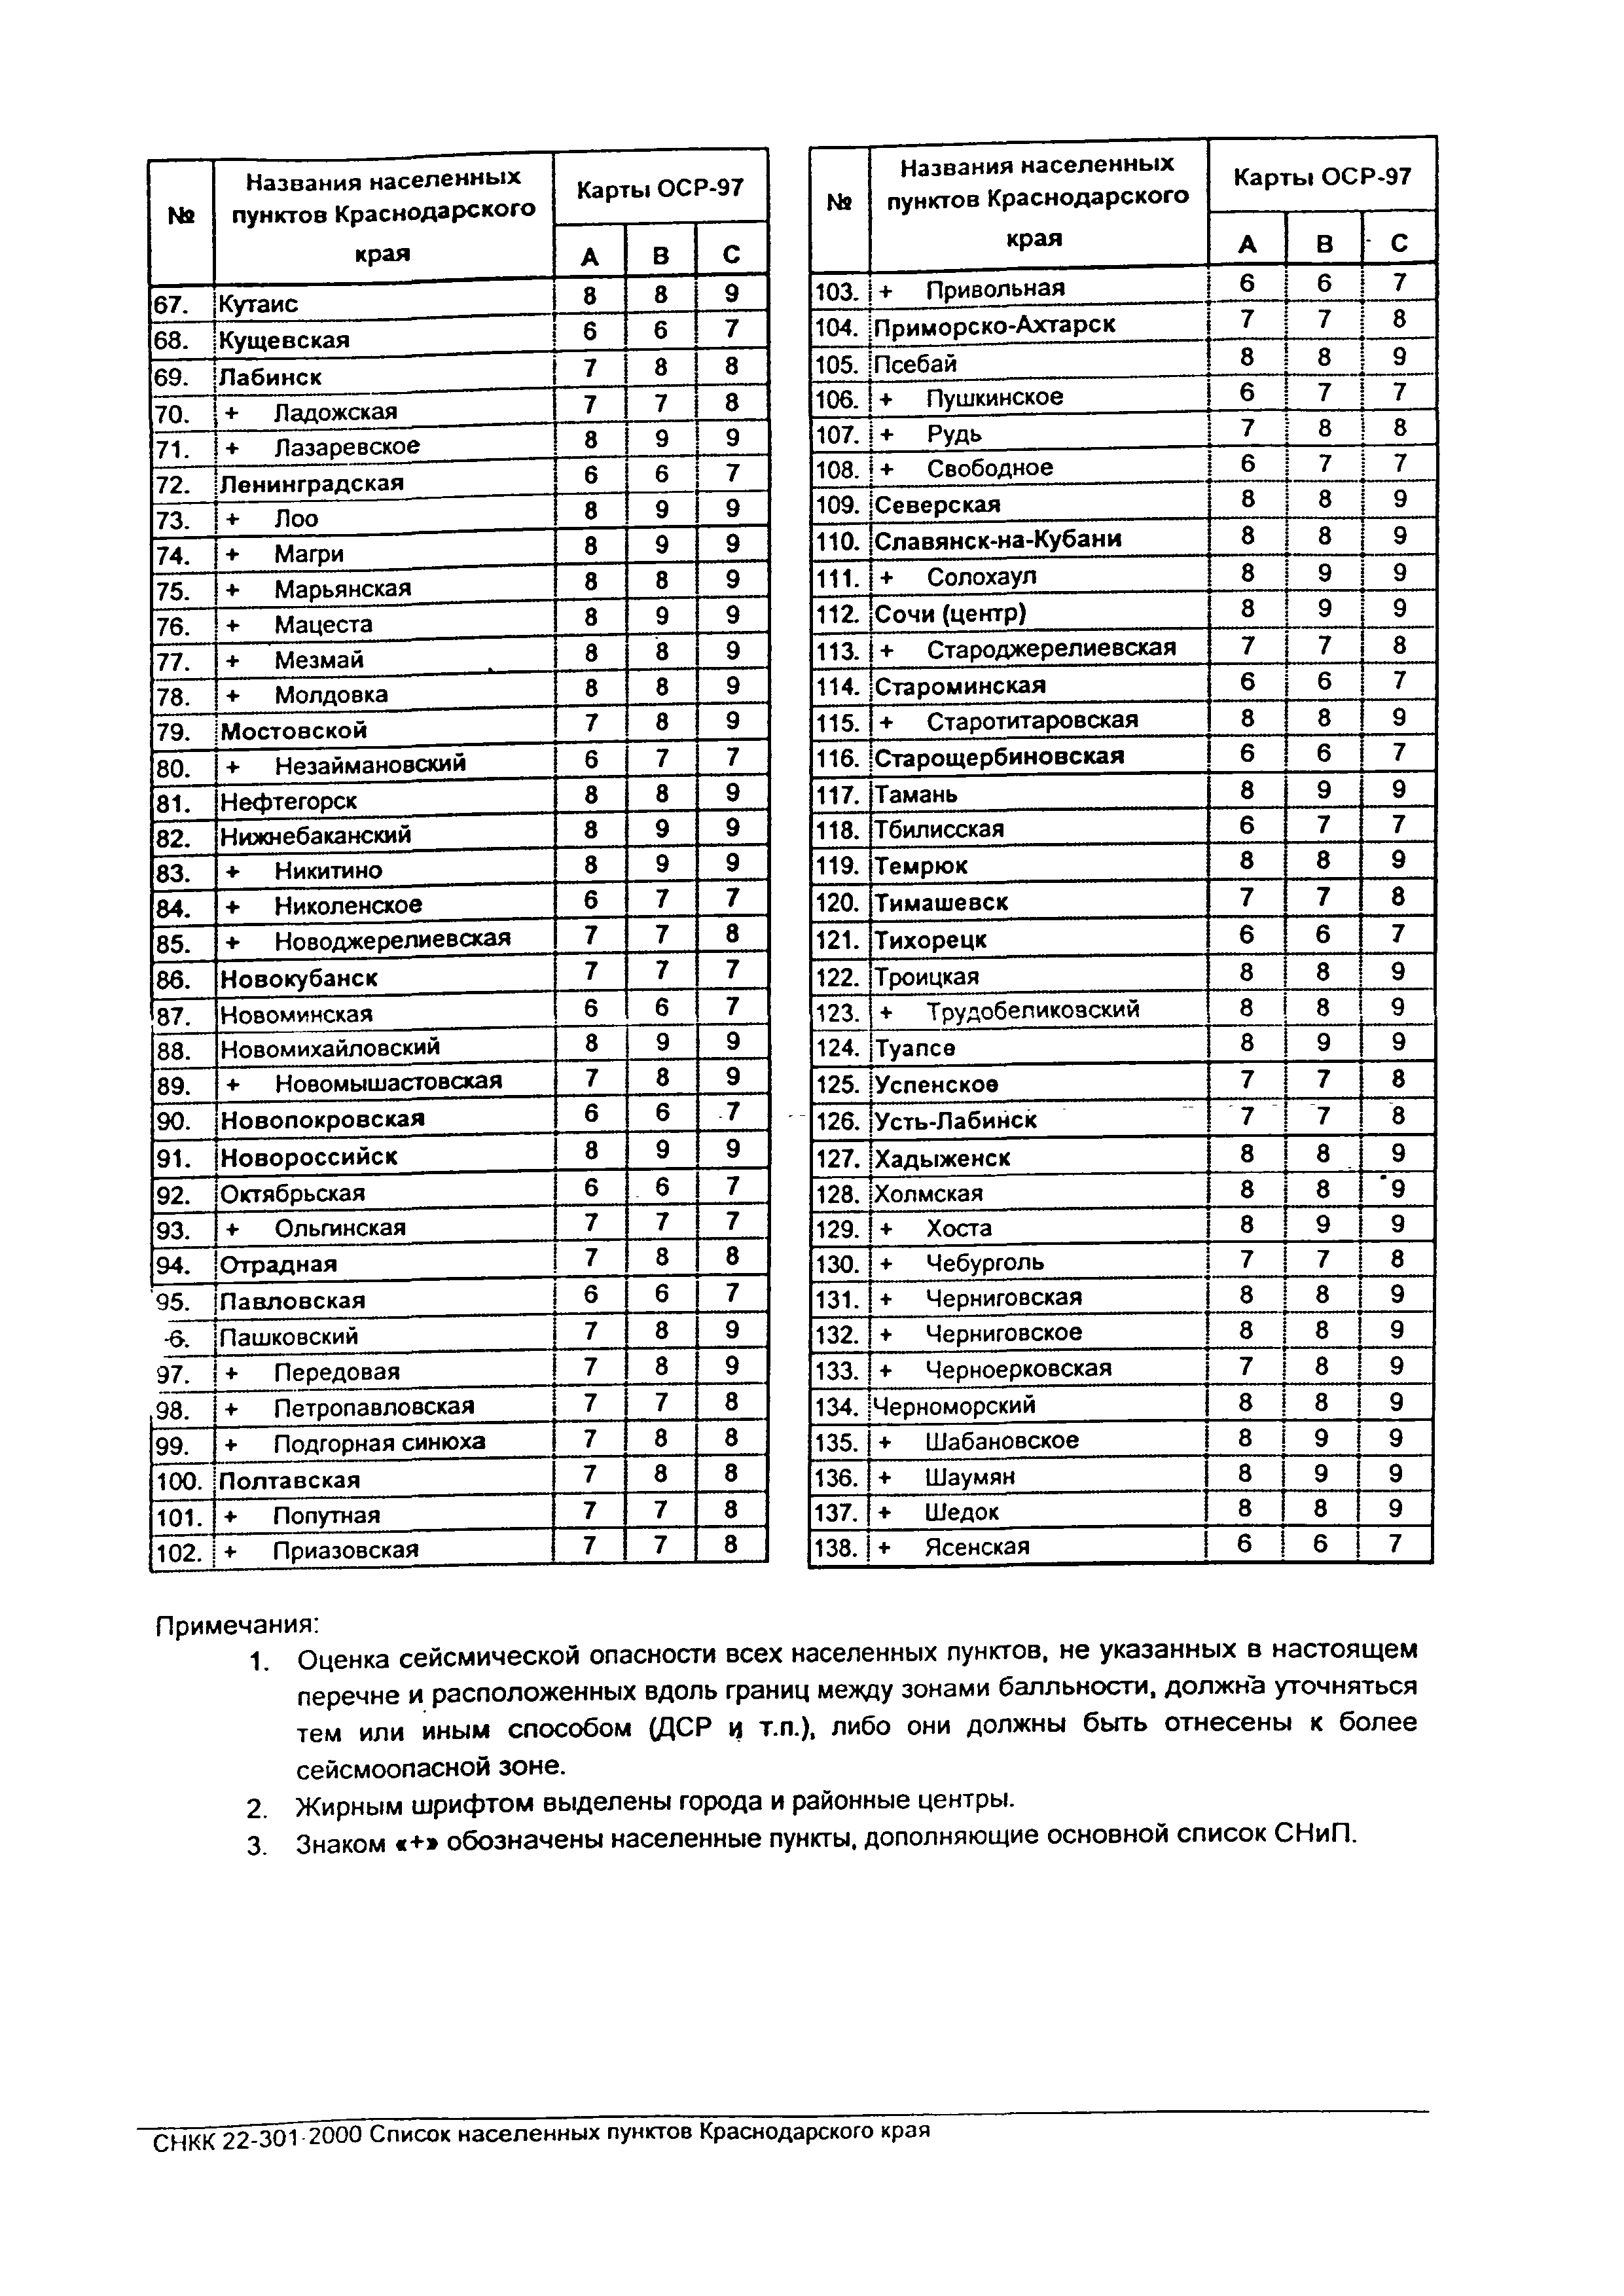 СНКК 22-301-99